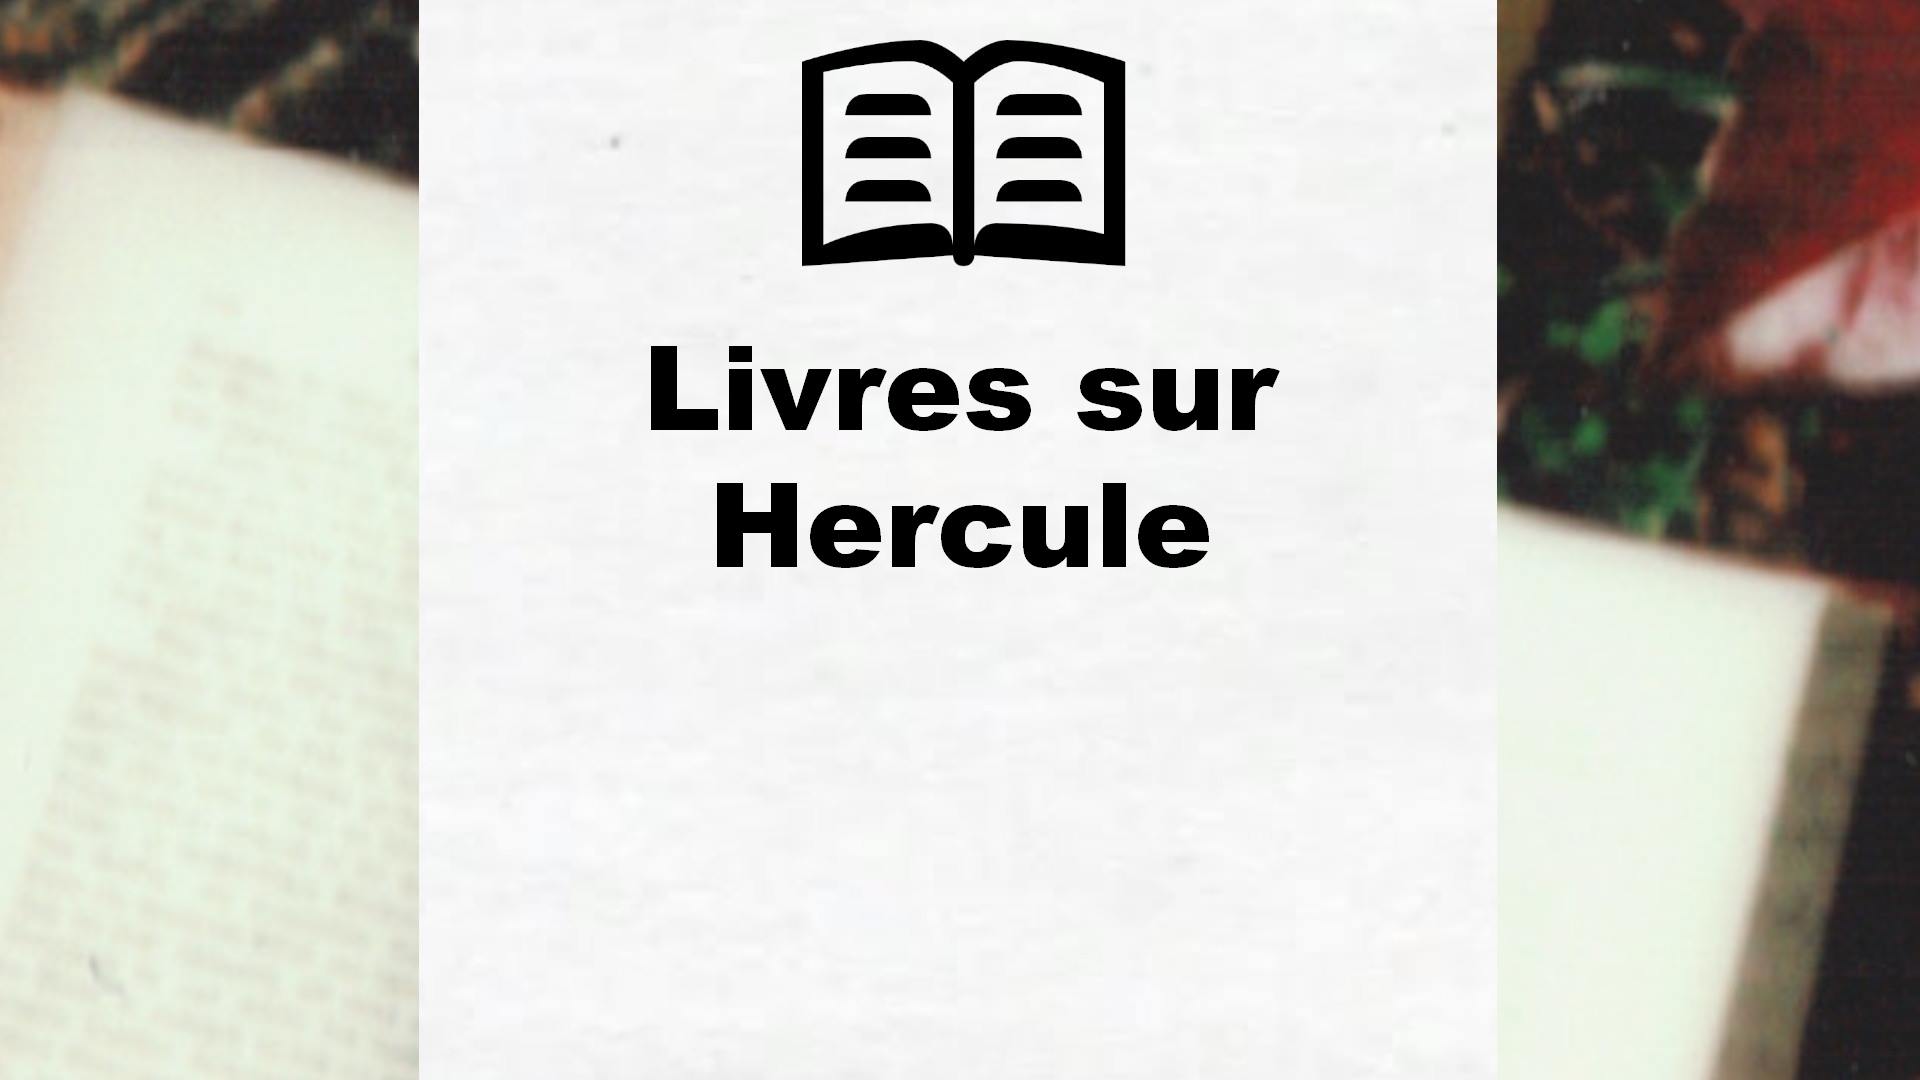 Livres sur Hercule